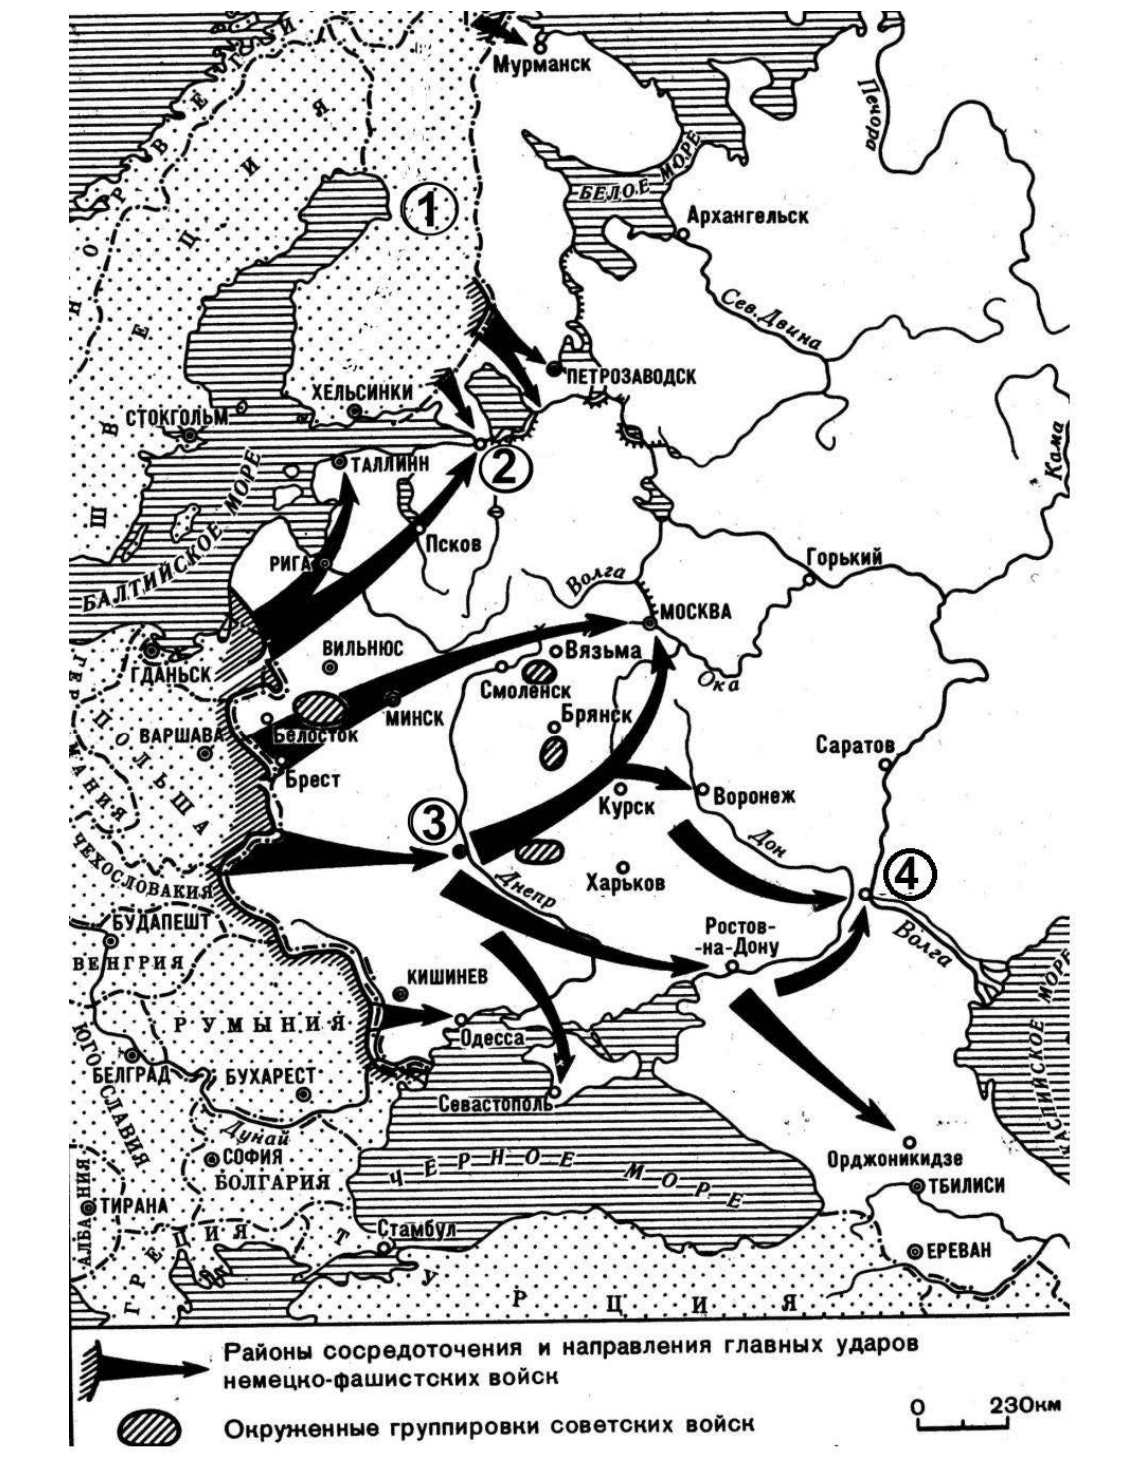 Нападение германии на россию. Карта наступления фашистов на СССР 1941. Карта плана Барбаросса 1941. План нападения фашистской Германии 1941. План нападения СССР на Германию в 1941.